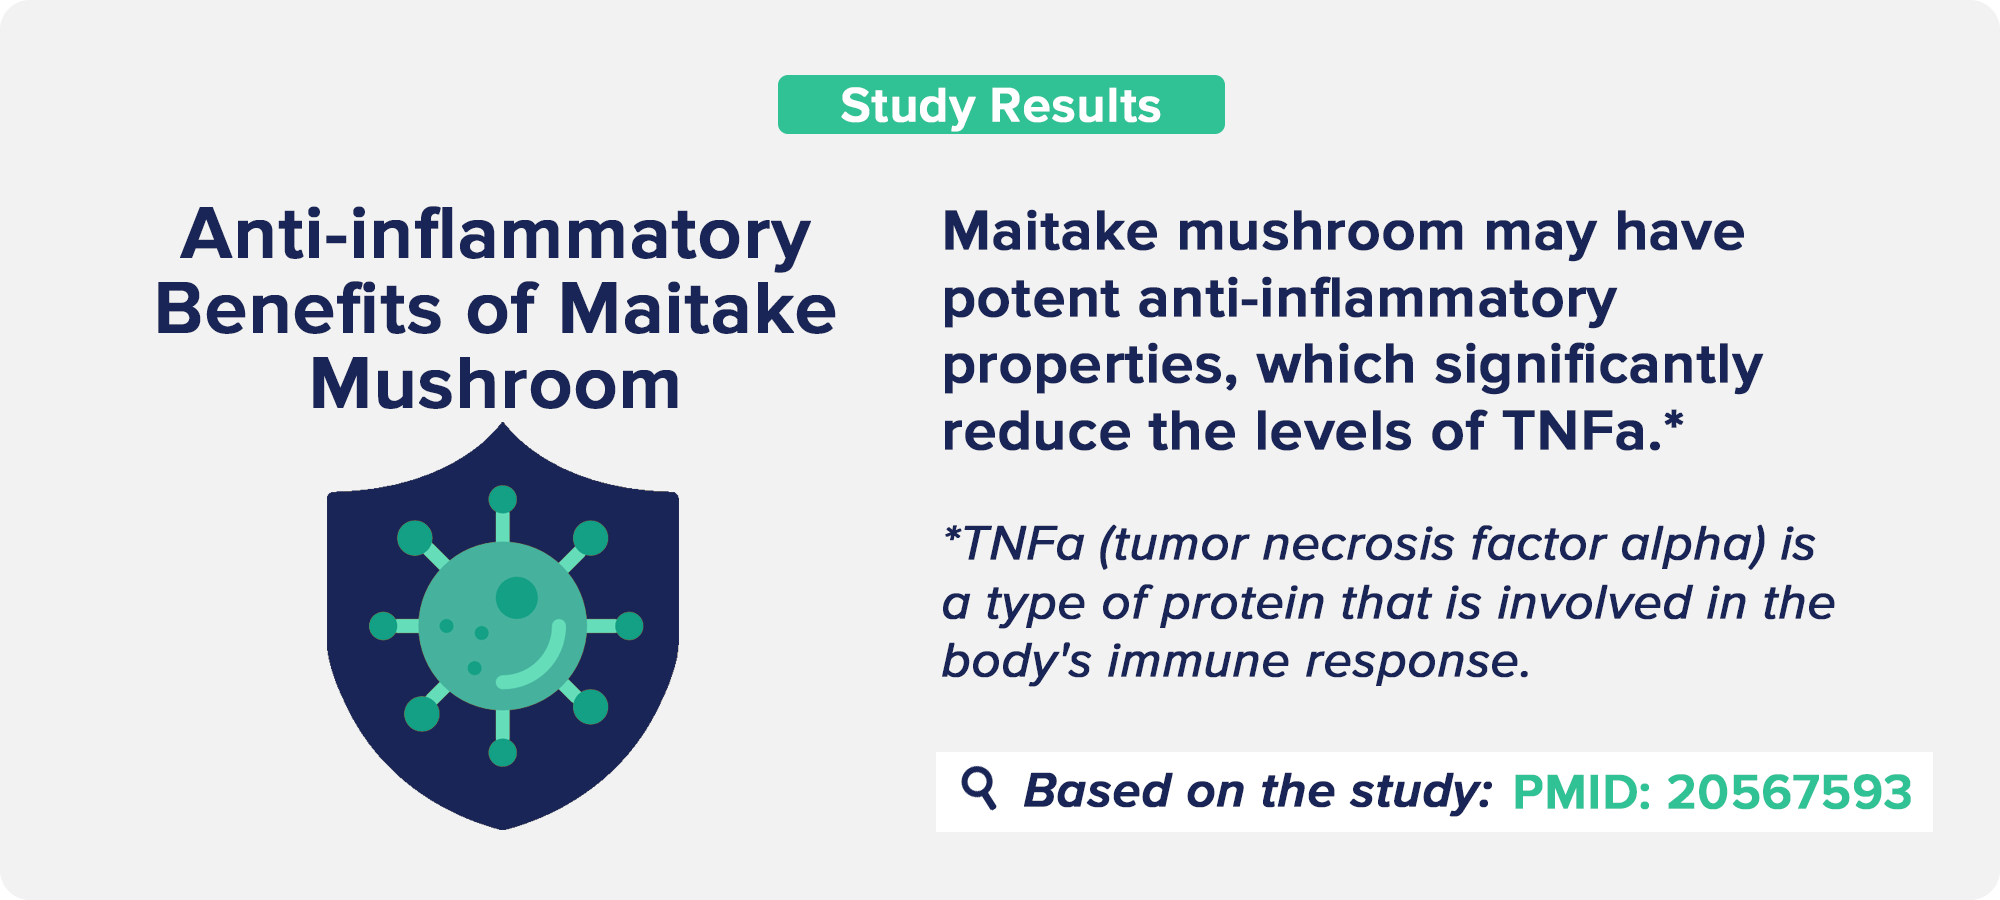 Anti-inflammatory Benefits of Maitake Mushroom